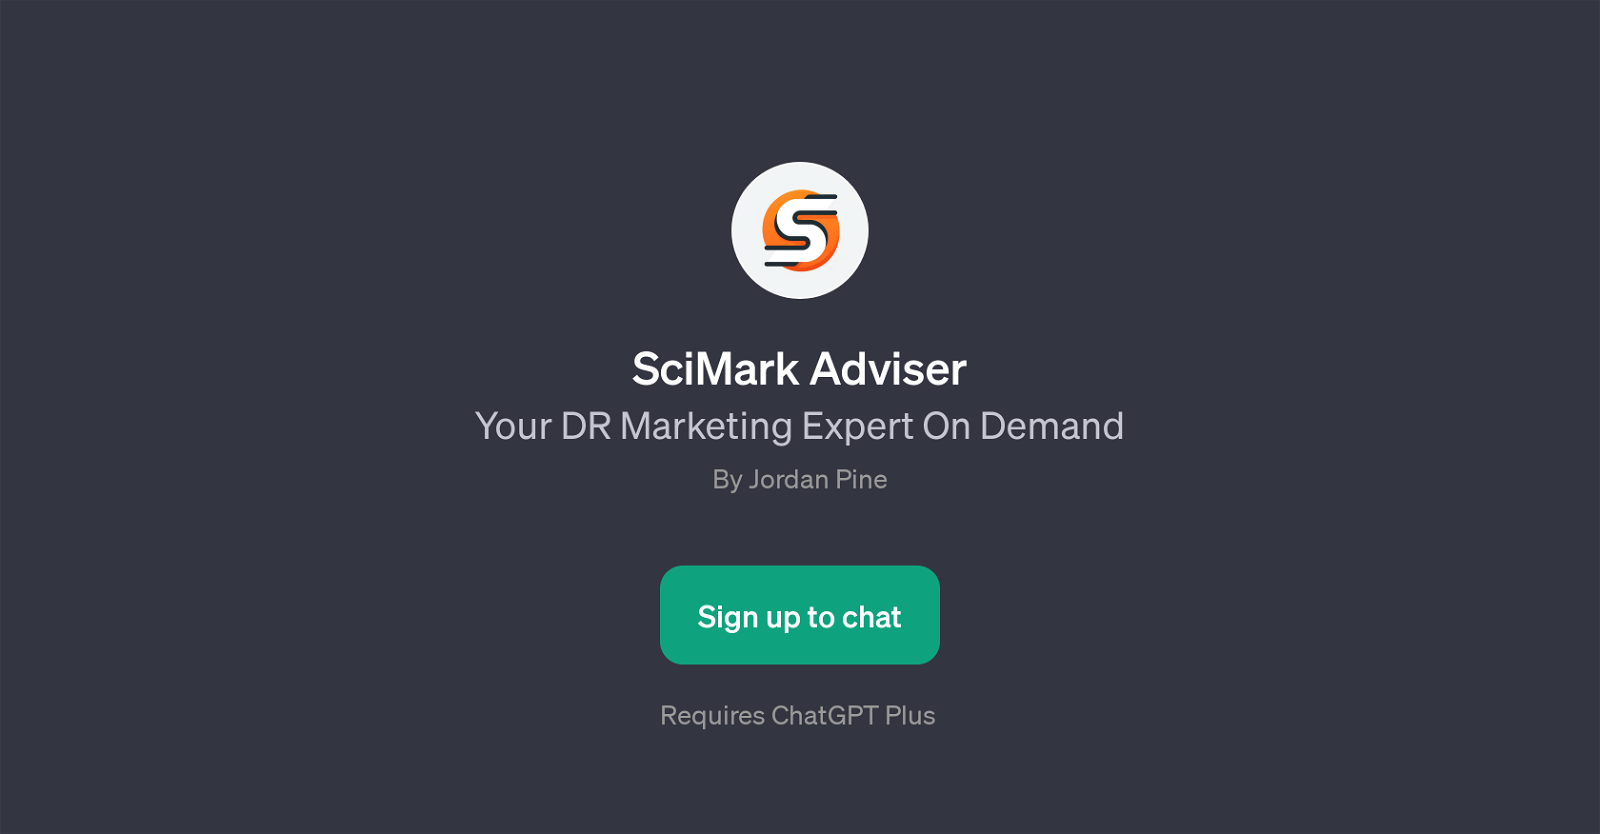 SciMark Adviser website